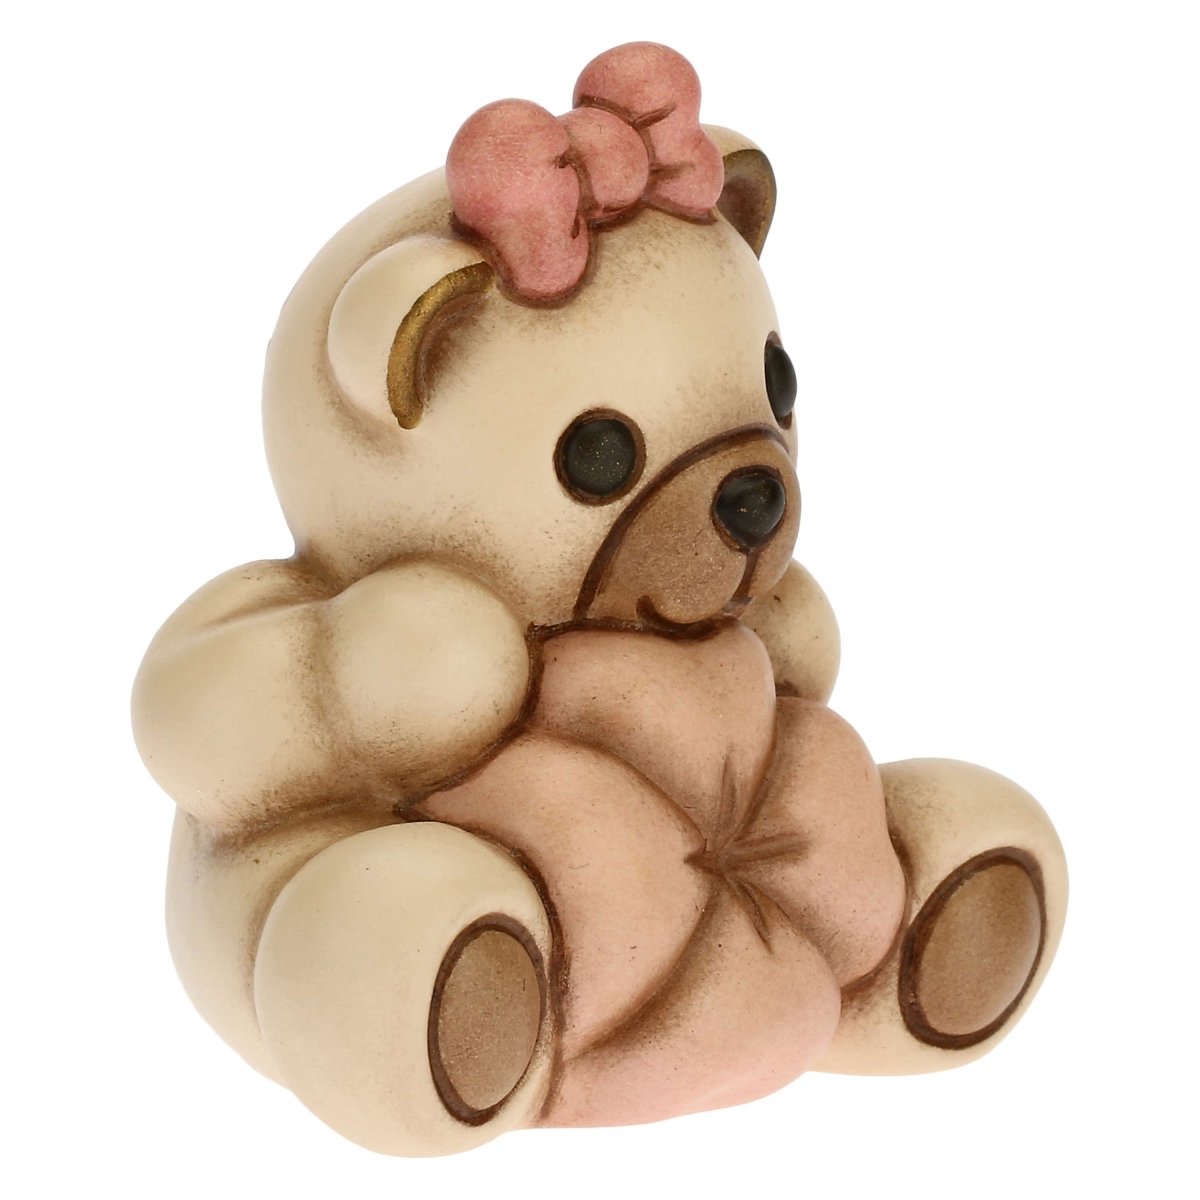 Thun - teddy con quadrifoglio portafortuna rosa| rohome - Rohome